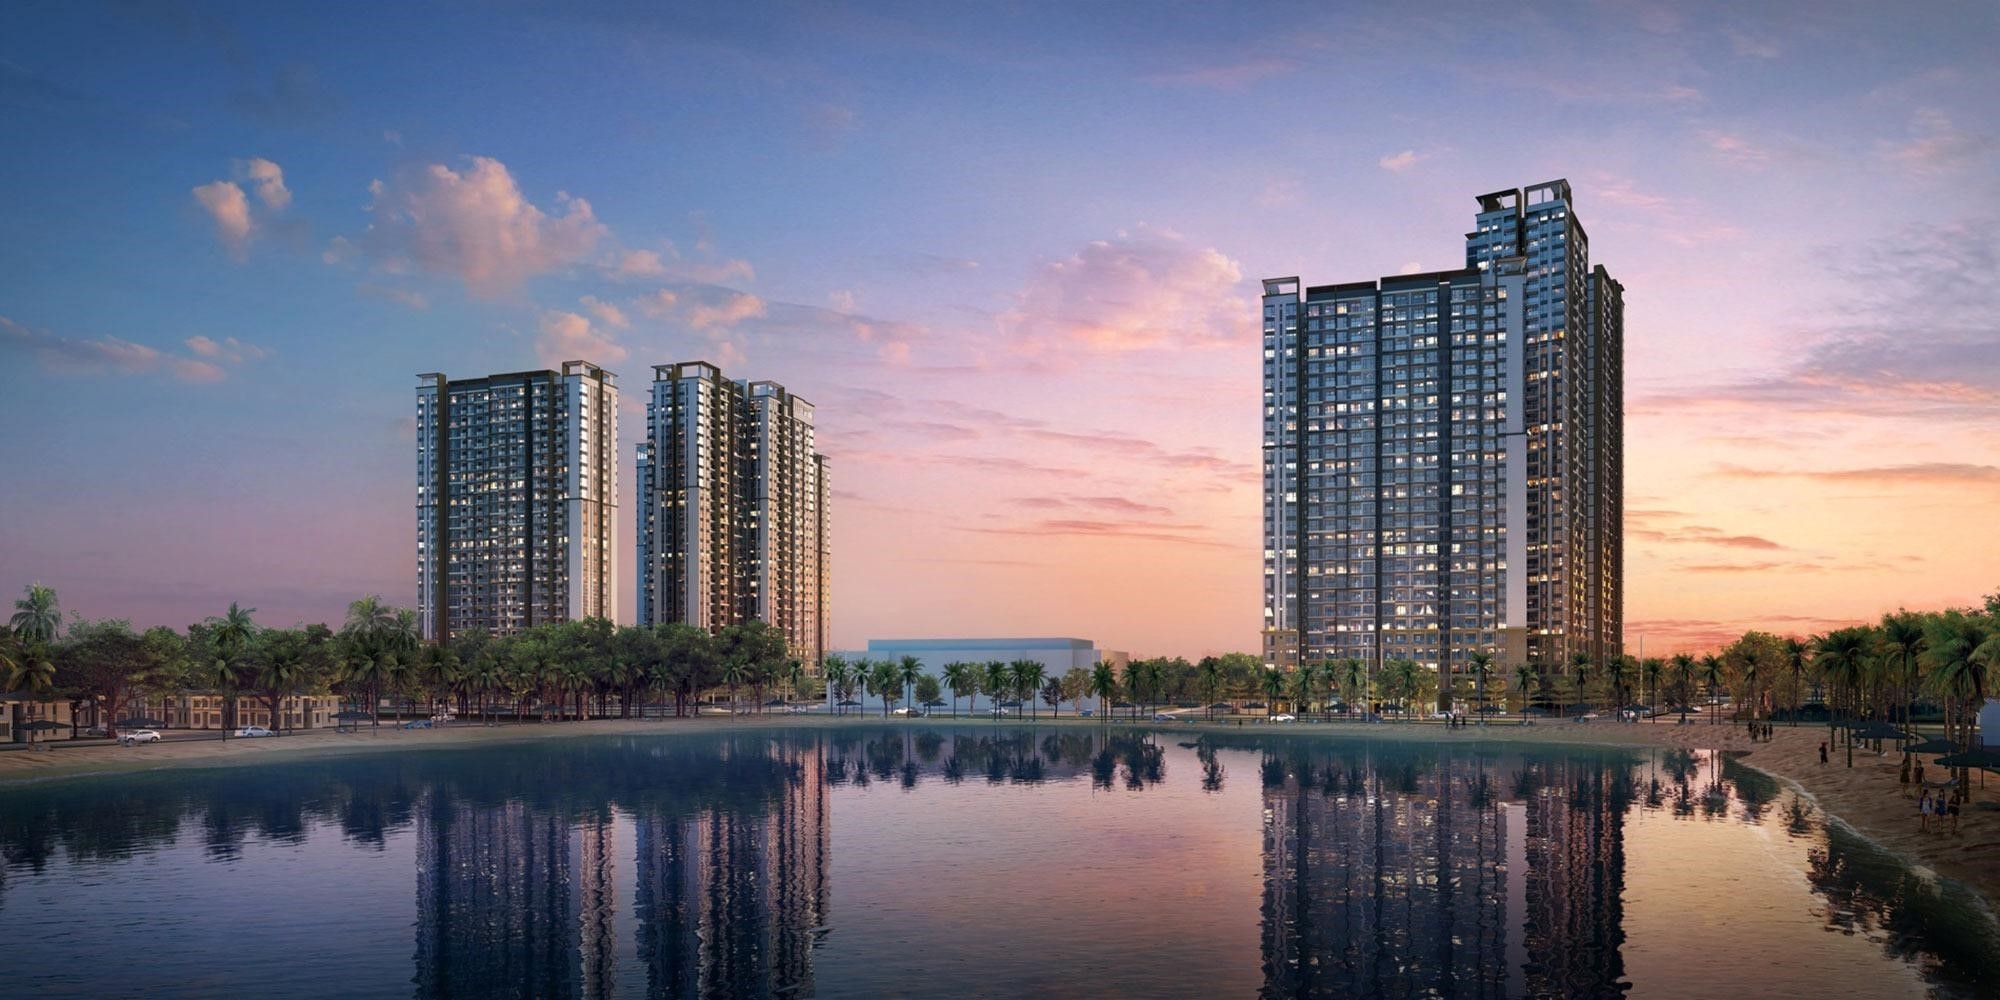 Lương 35 triệu đồng/tháng có thể mua trả góp căn hộ 2PN dự án Masteri Waterfront Không?